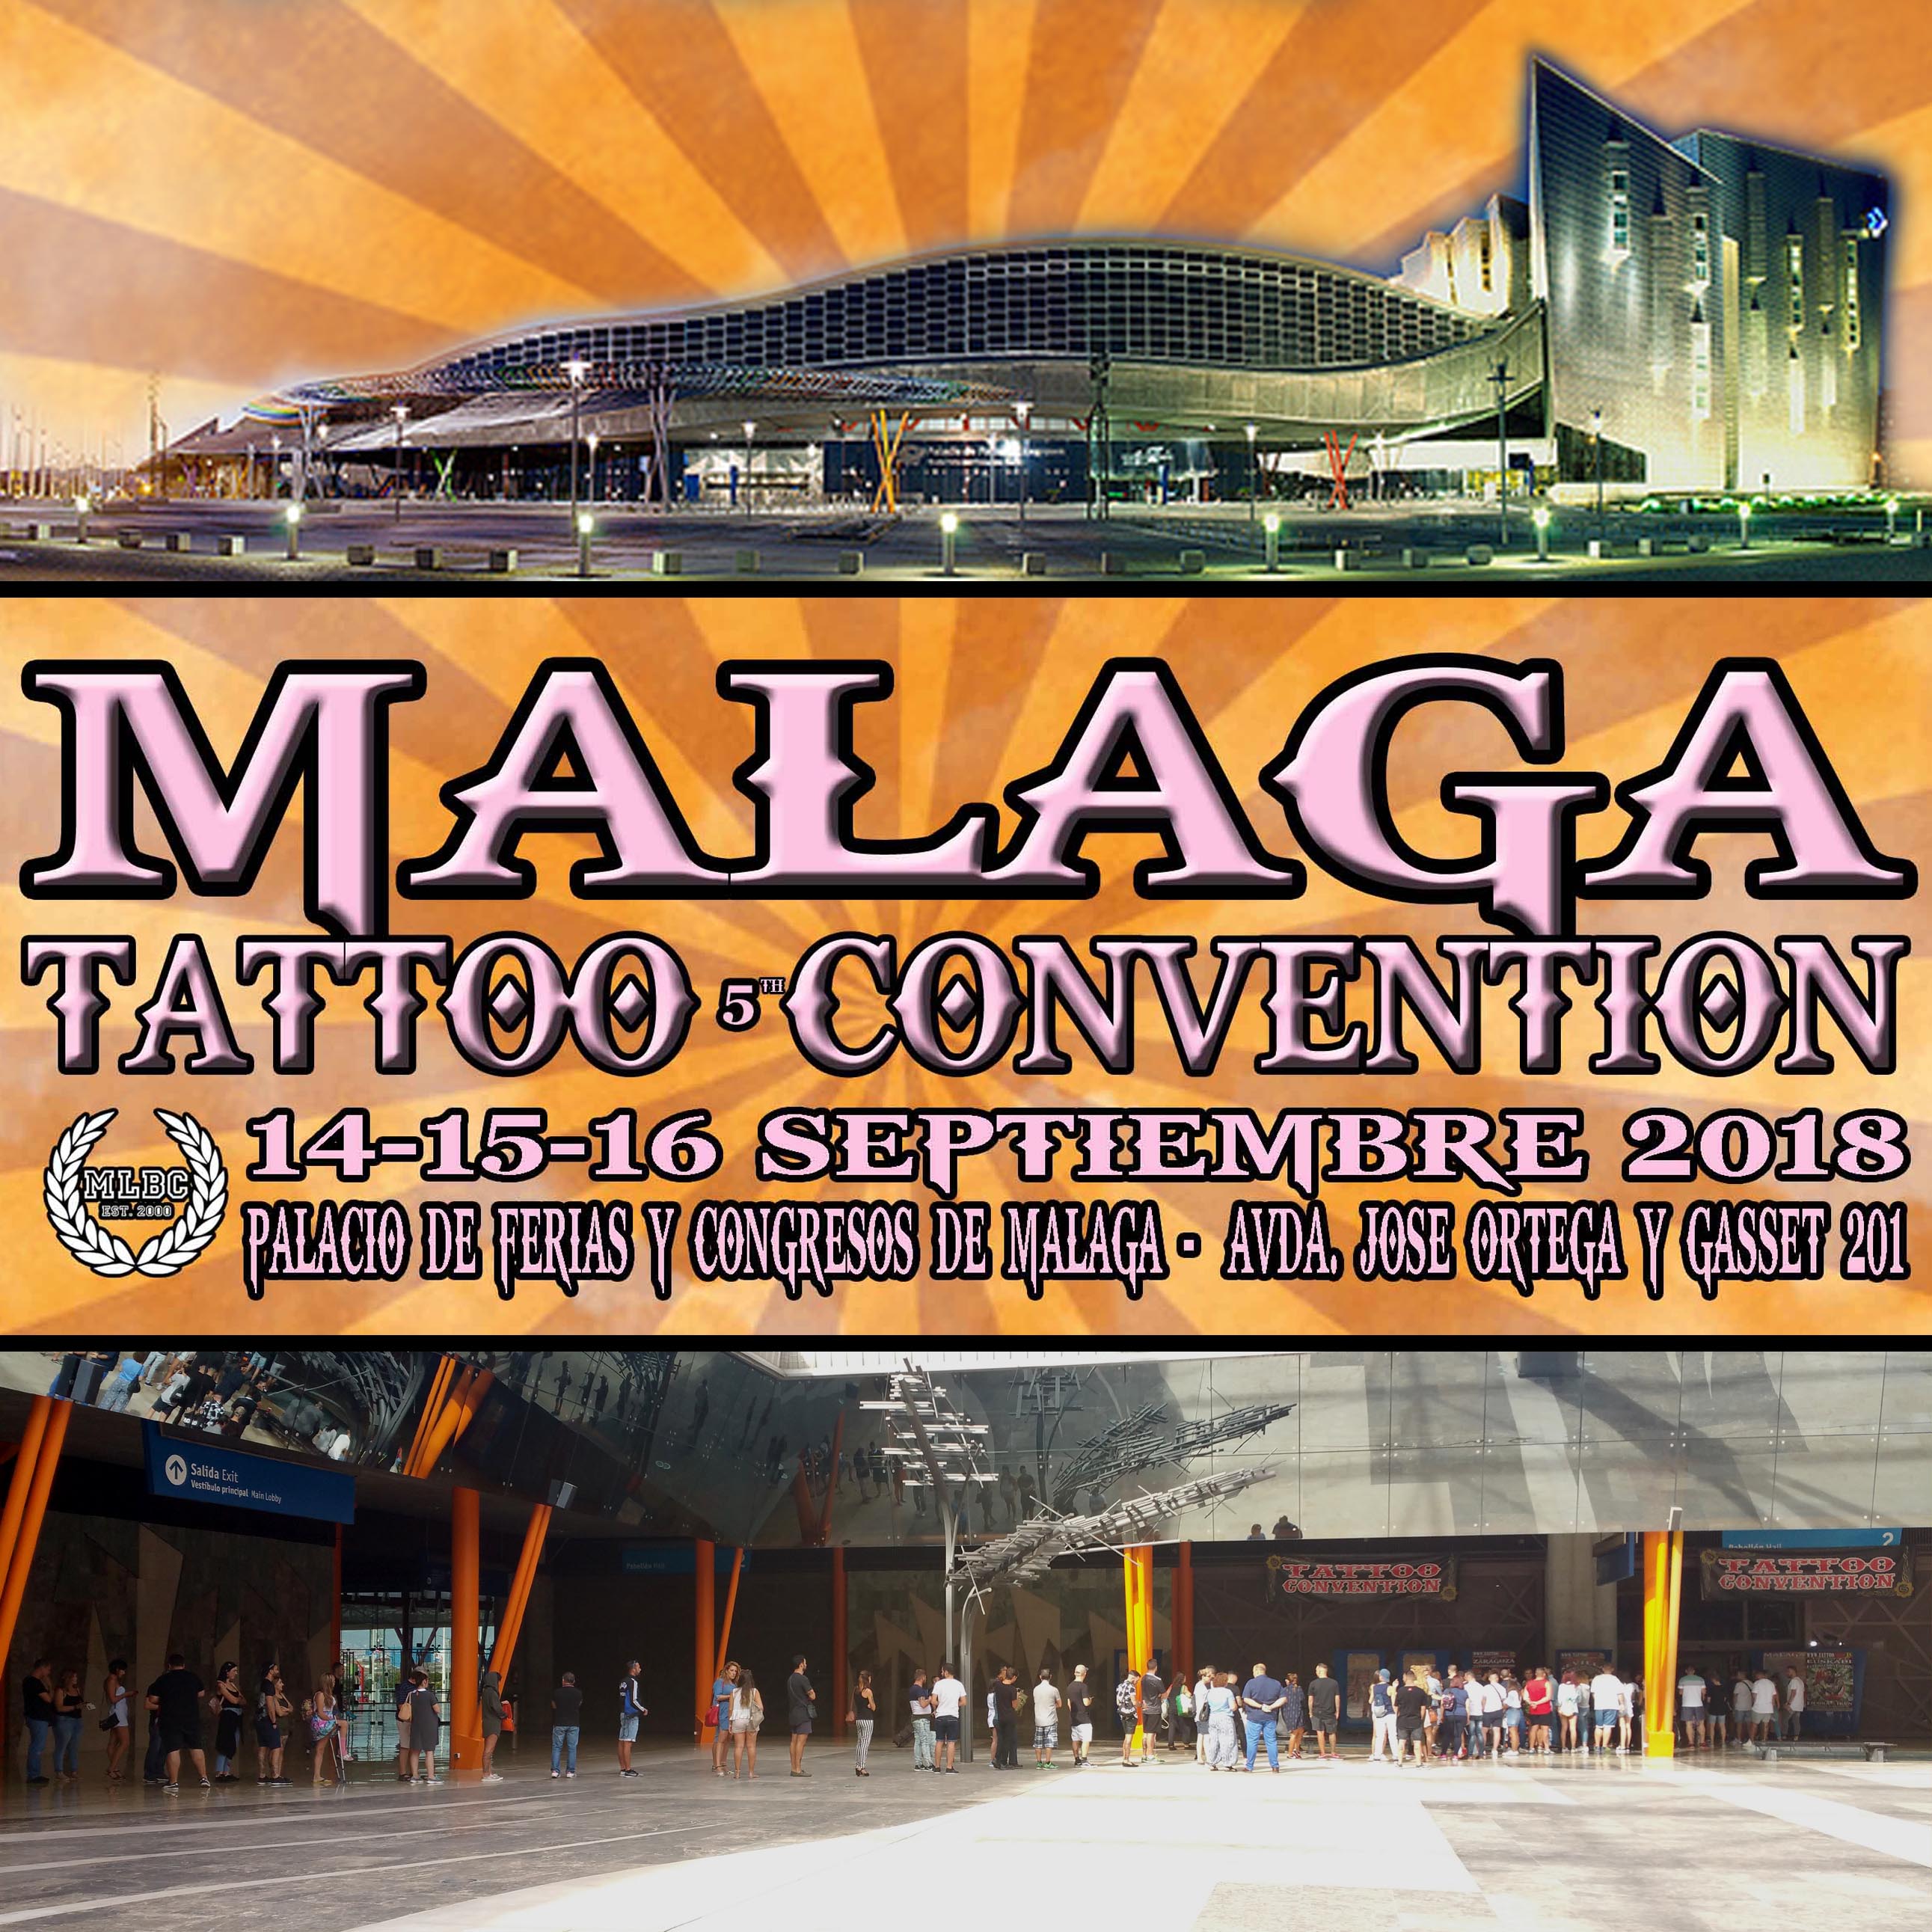 La '5ª Málaga Tattoo Convention' se celebrará el 14-15-16 Septiembre 2018.